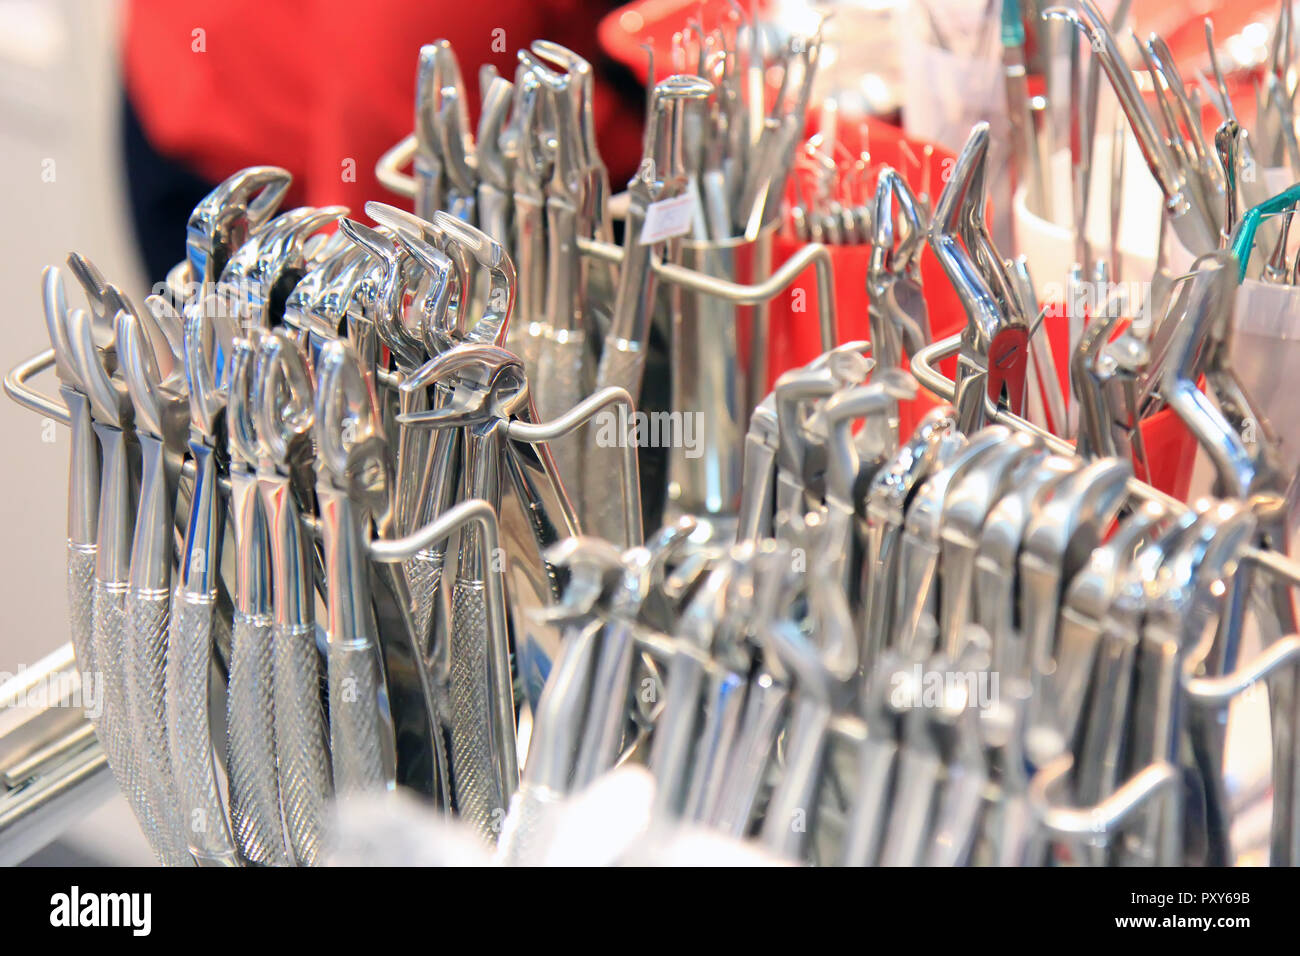 Dentisti strumenti. Acciaio inossidabile apparecchiature dentali. Foto Stock